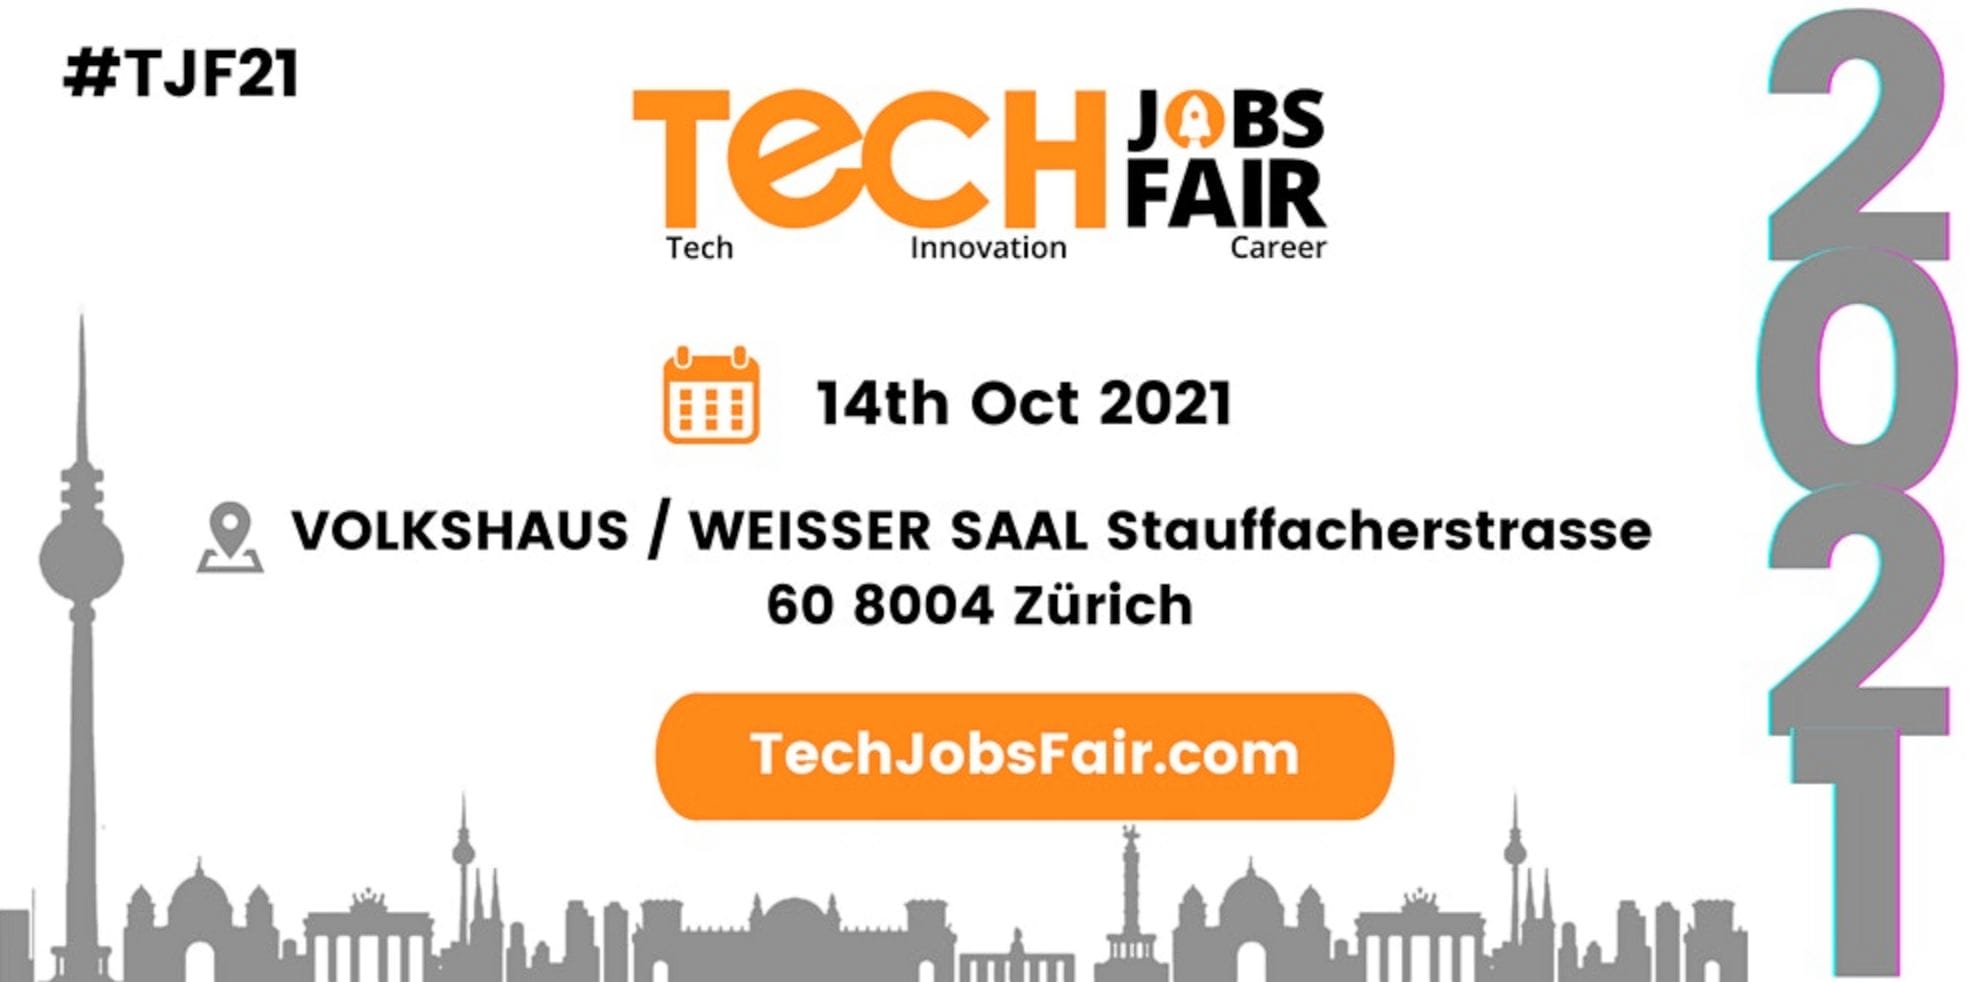 Tech Jobs Fair Zurich 2021